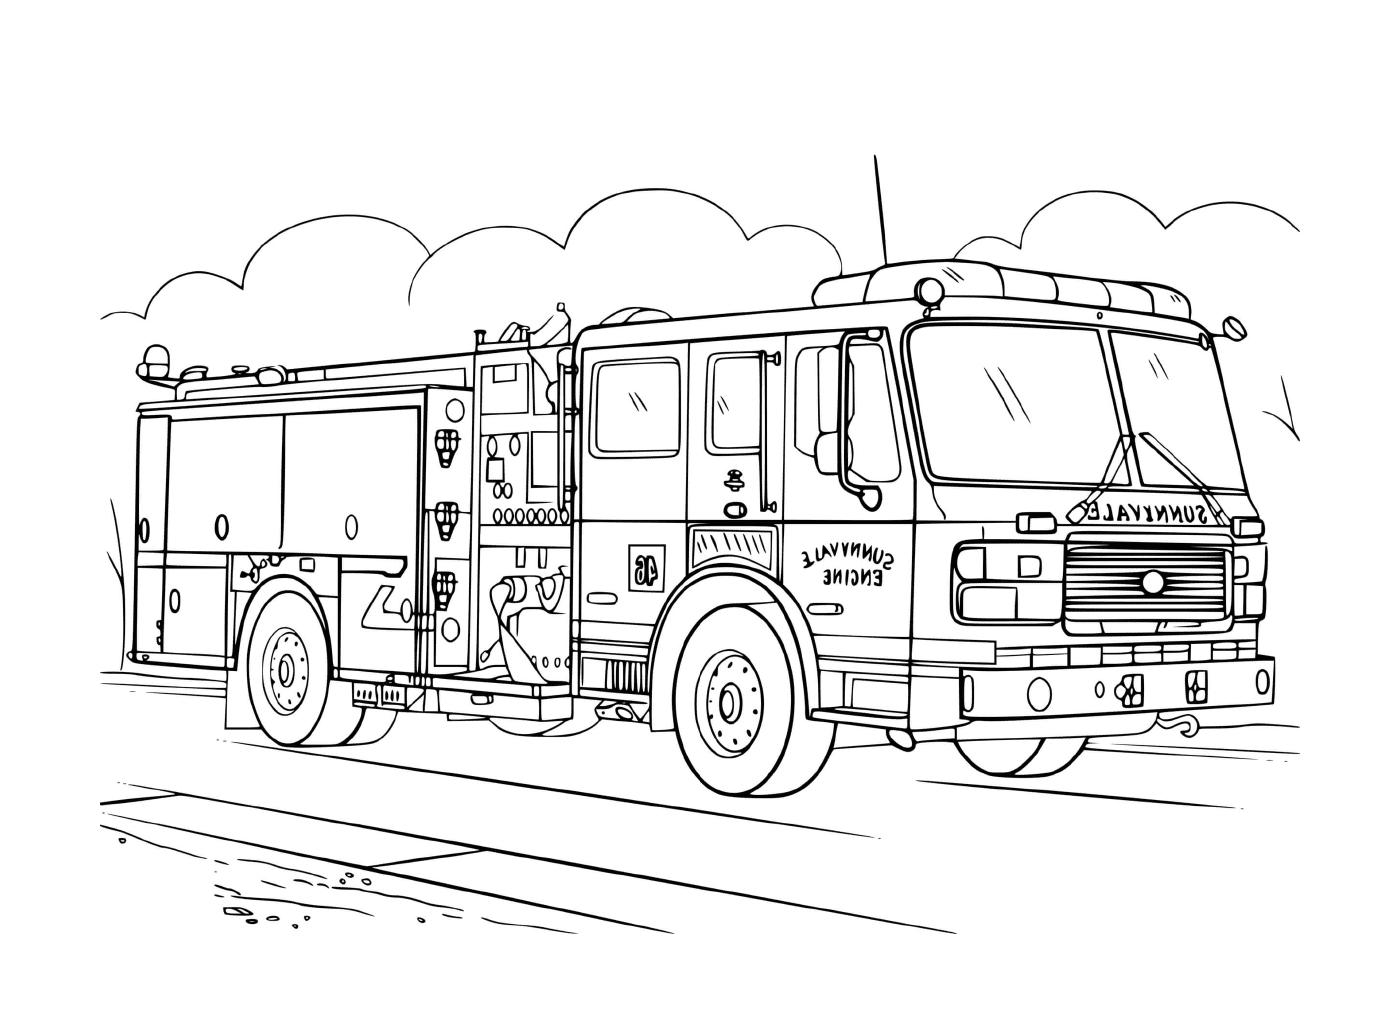  Carrello antincendio realistico, disegno 